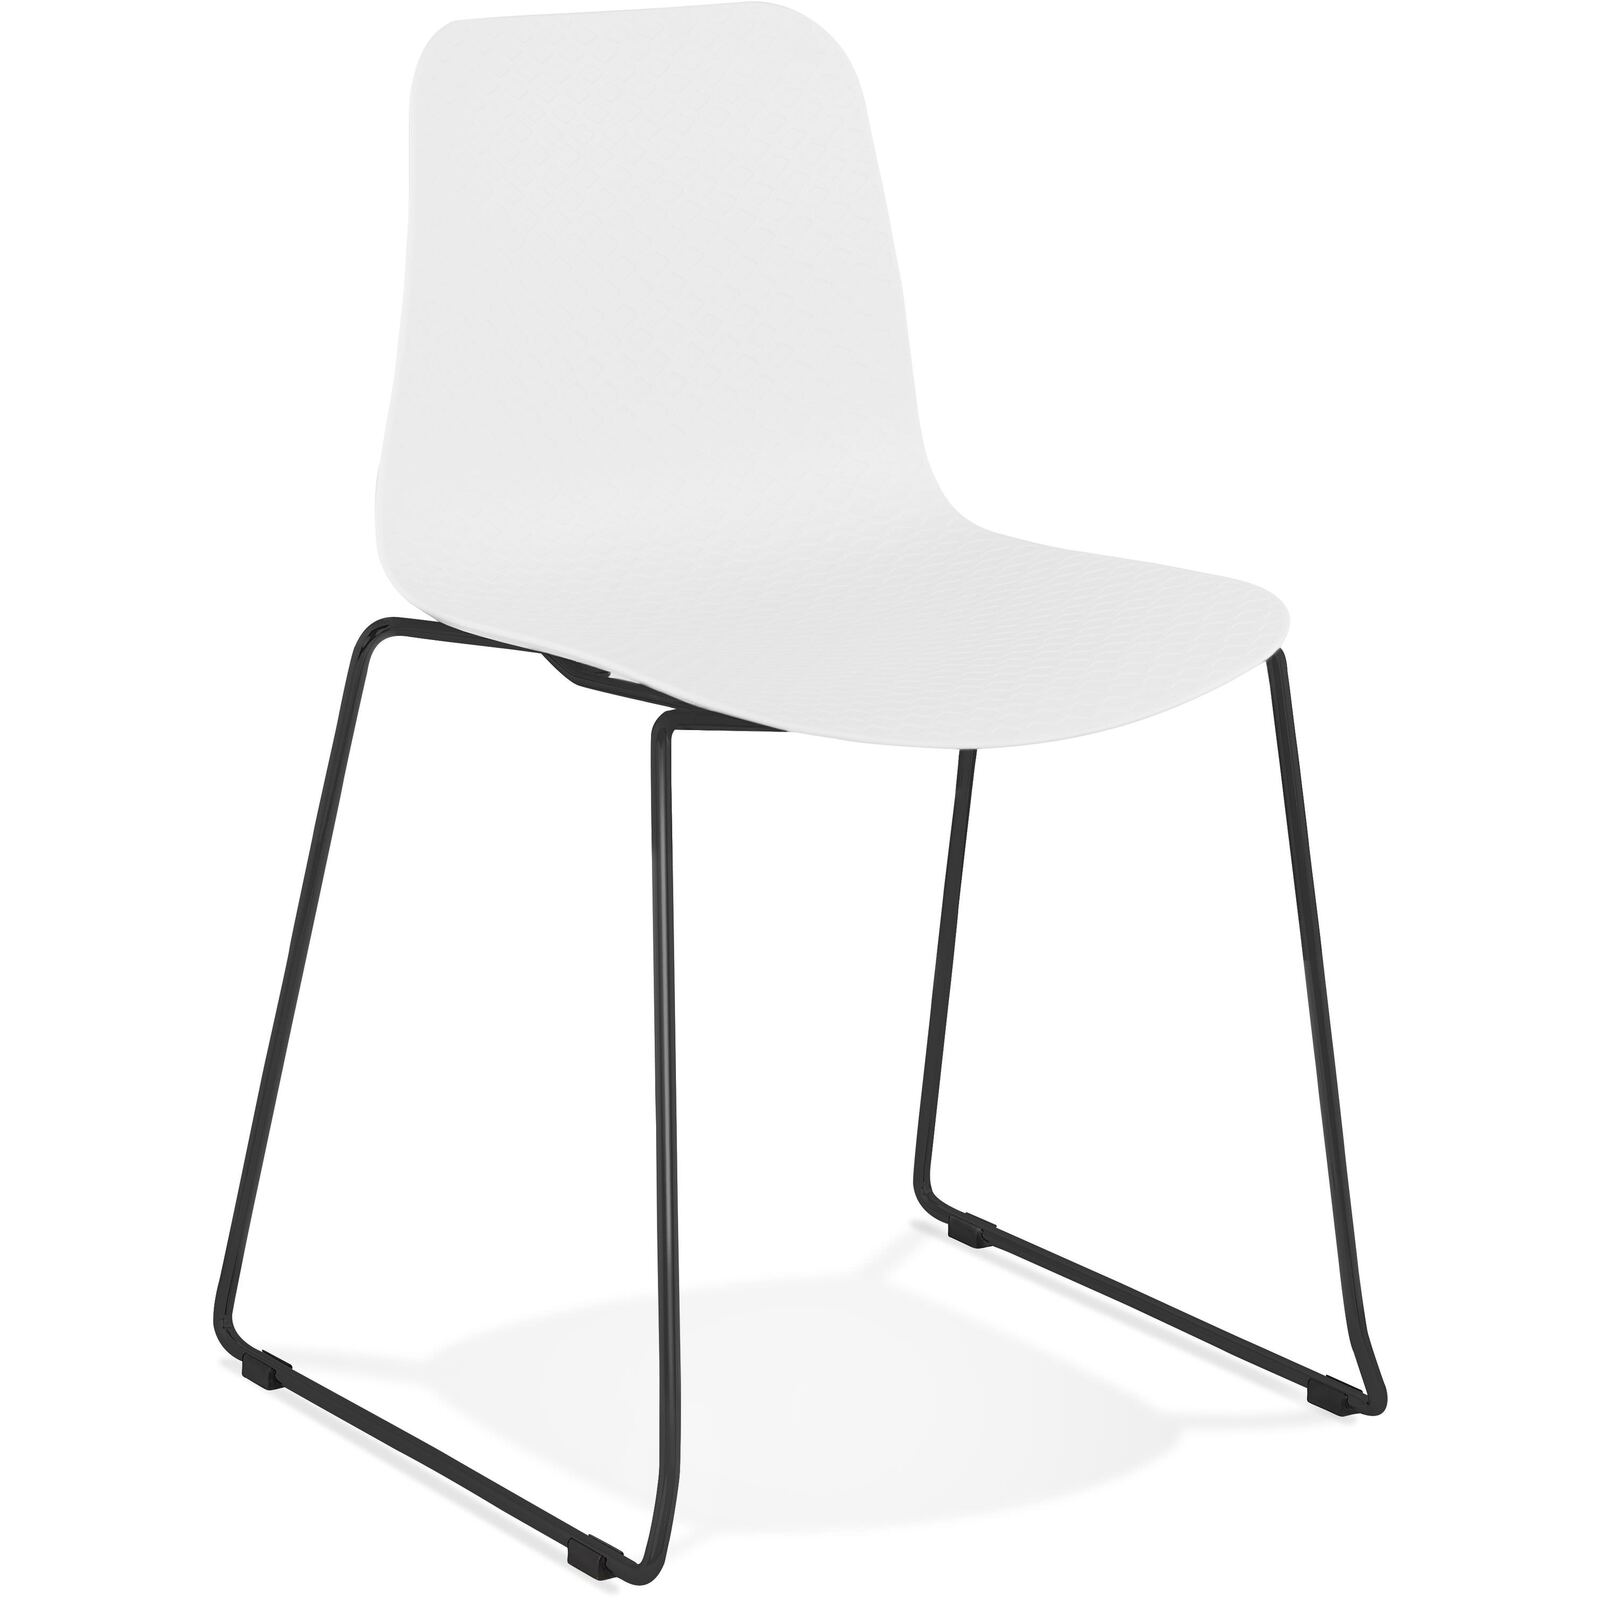 Chaise de table design assise couleur blanc pietement noir